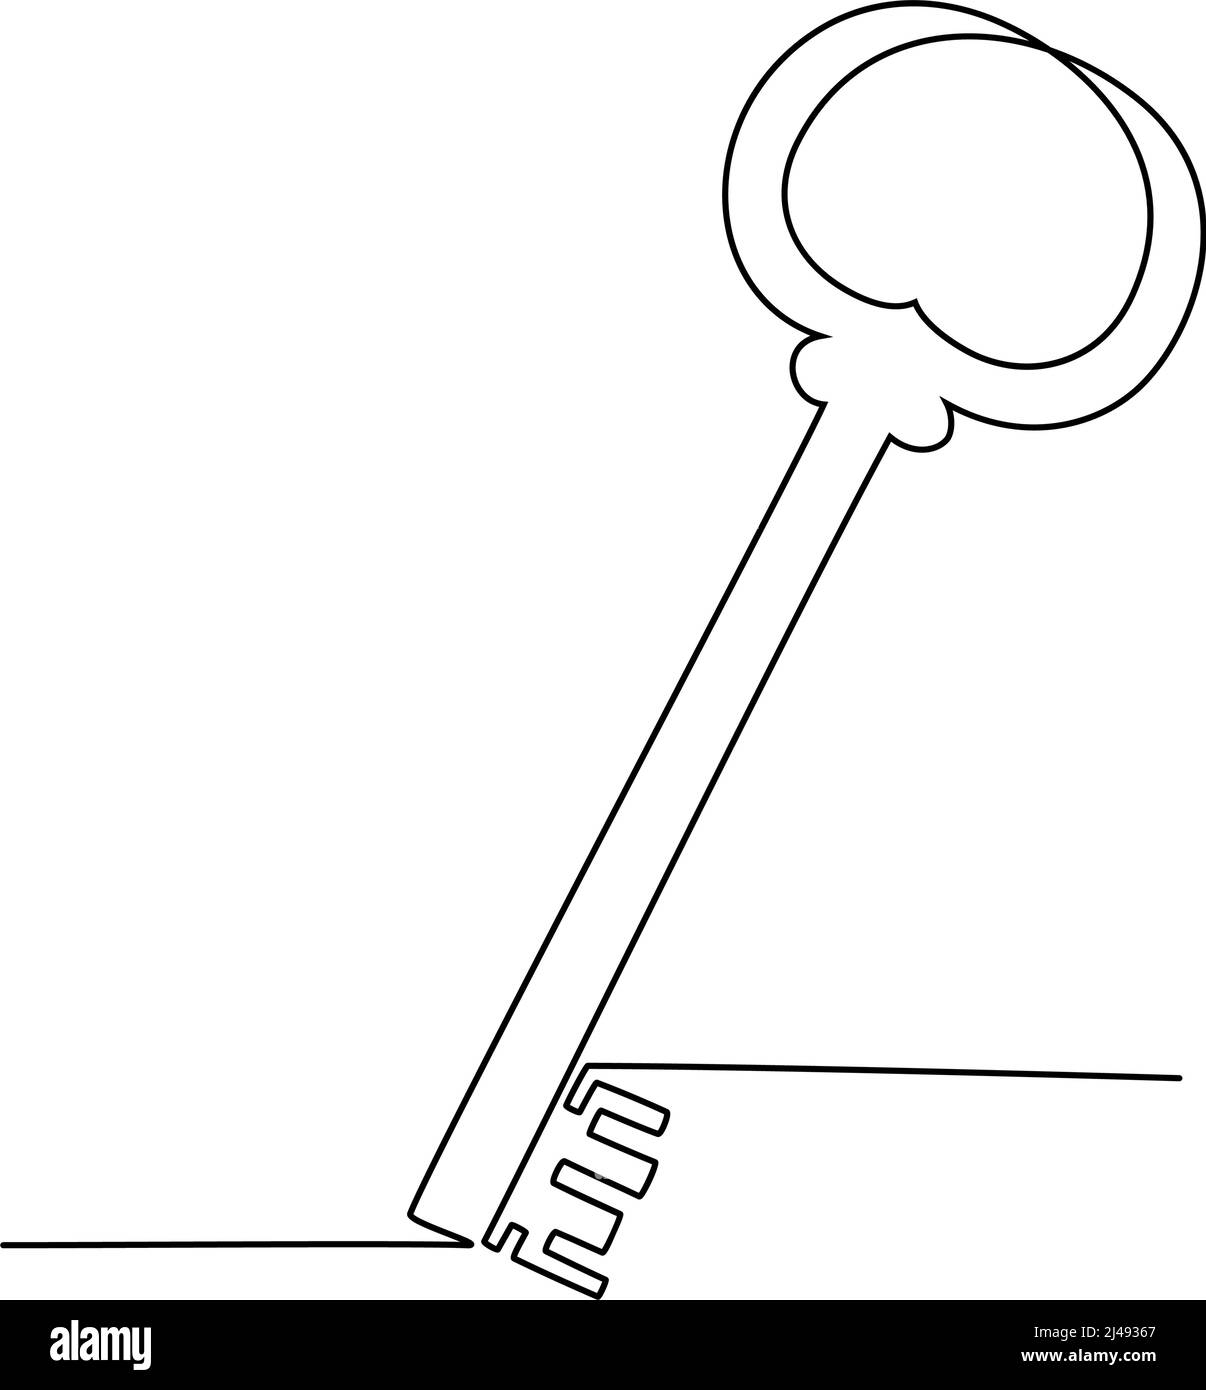 Fortlaufende einzeilige Zeichnung des Vintage-Schlüssels. Vektorgrafik Stock Vektor